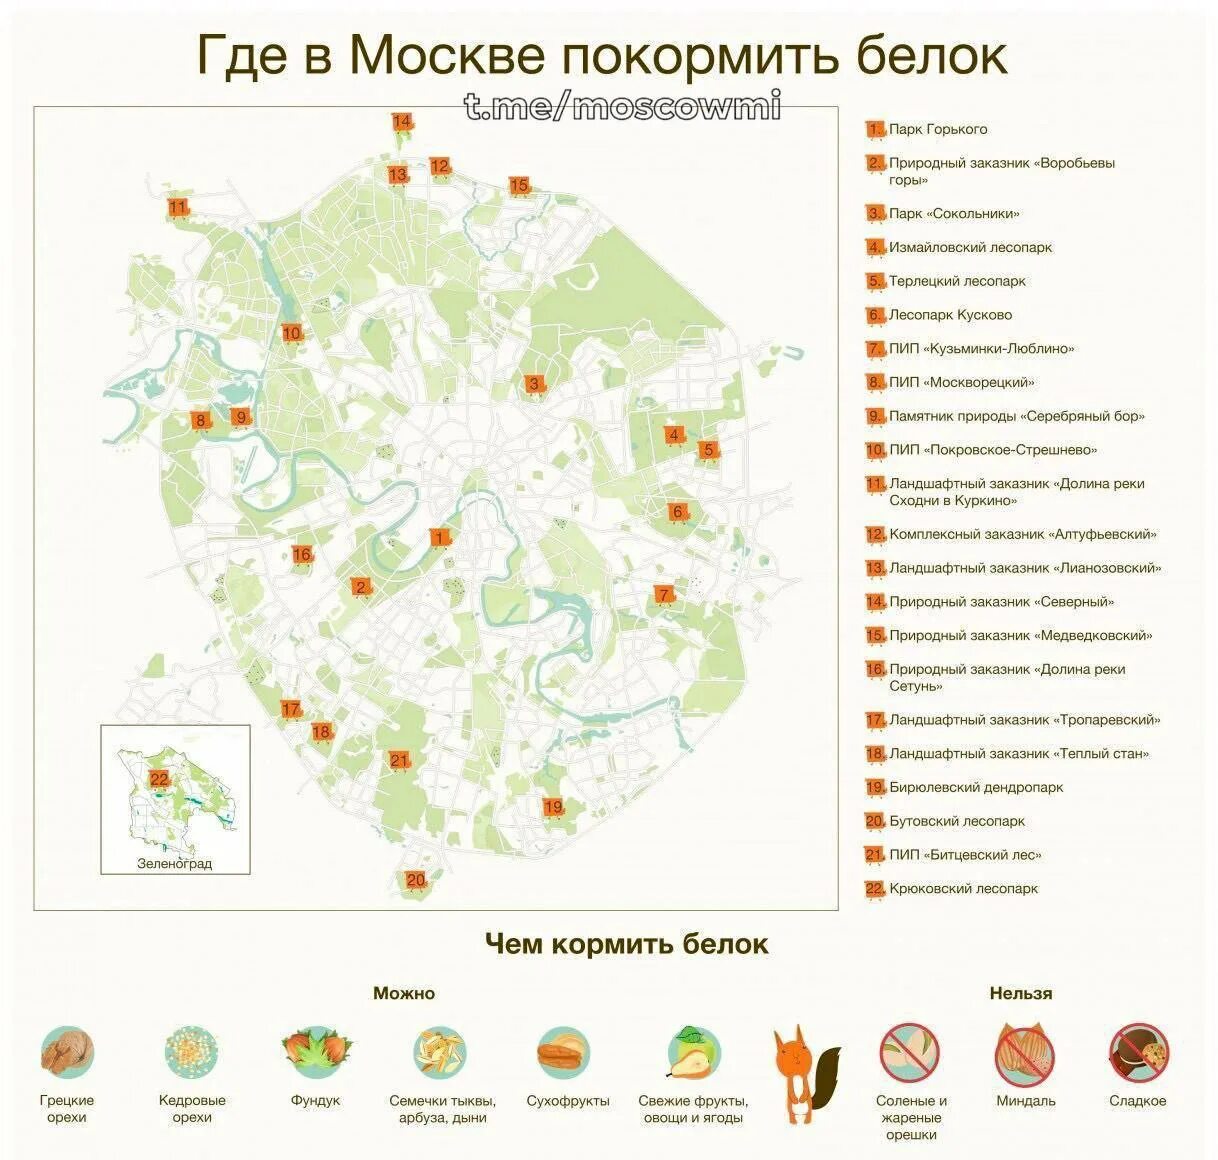 Где в москве производится. Карта парков Москвы. Карта парков и лесопарков Москвы. Где покормить белок в Москве. Парки Москвы на карте.